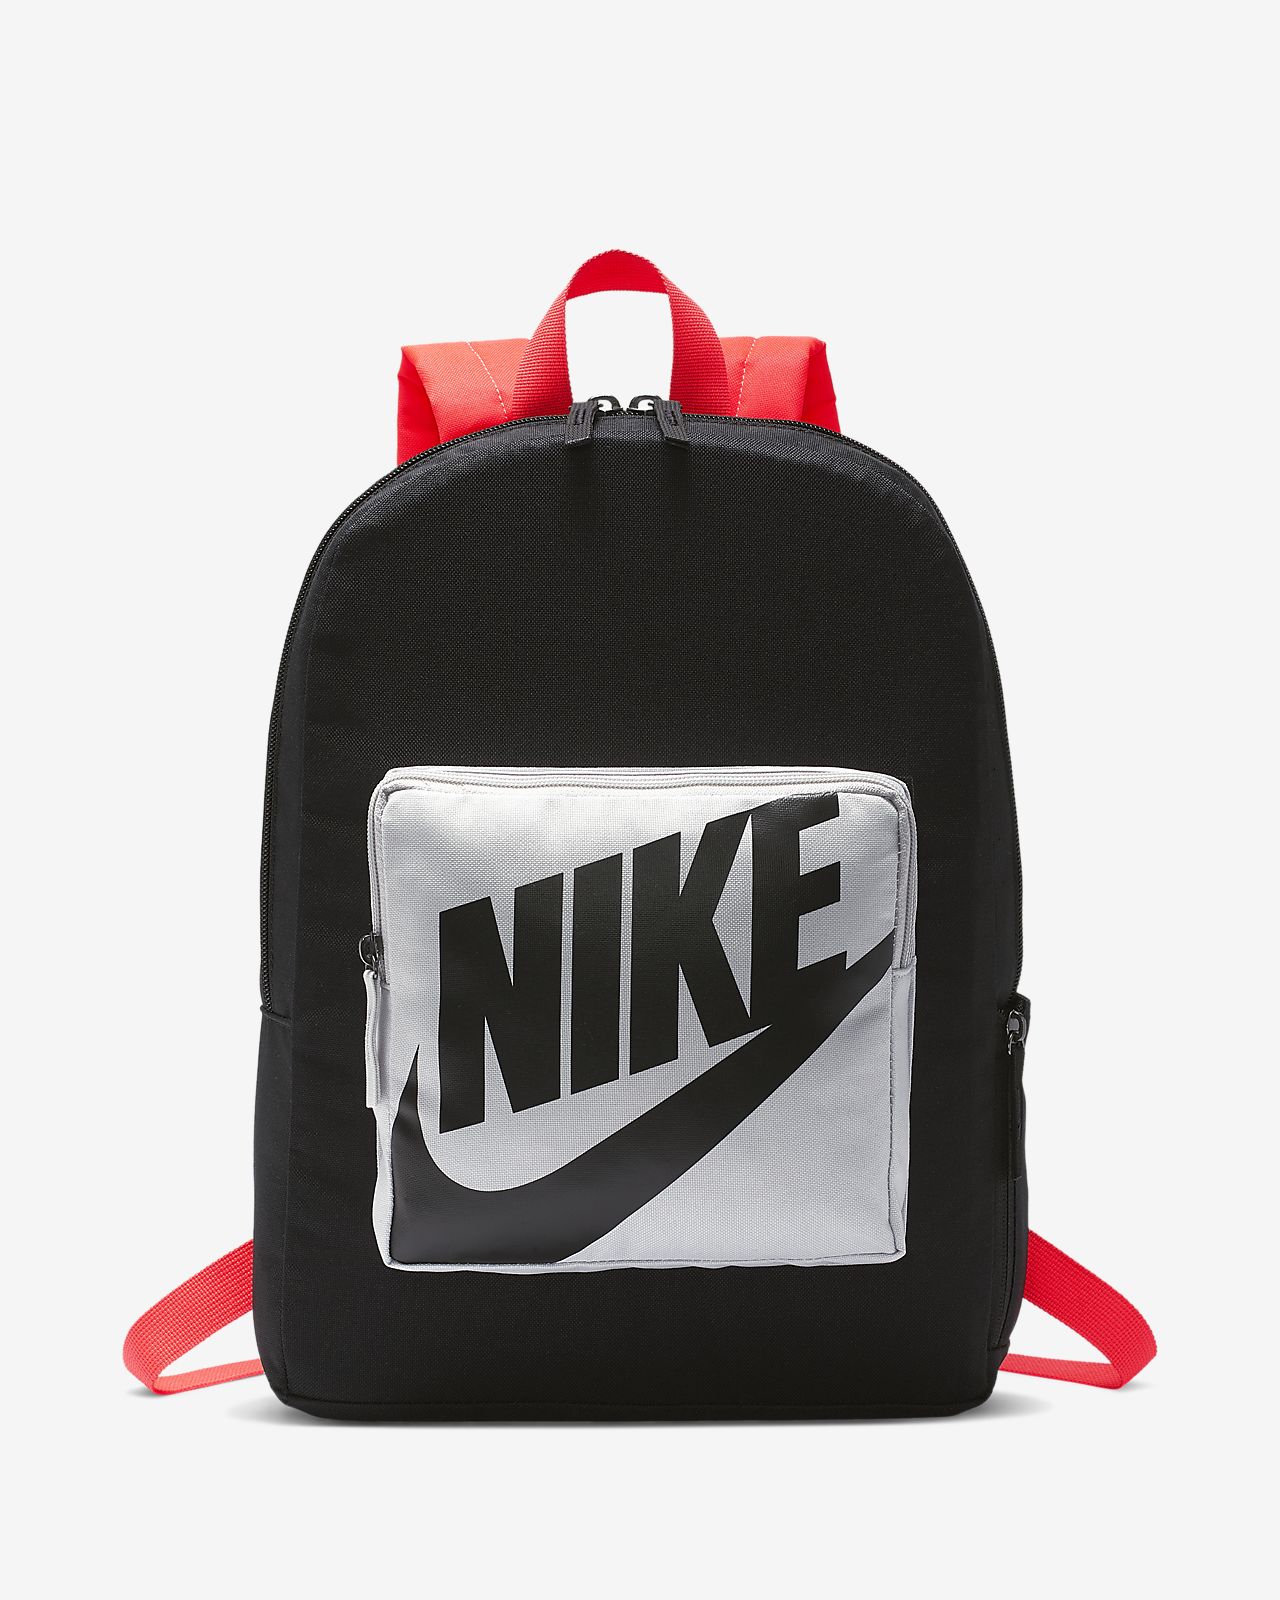 backpack nike price